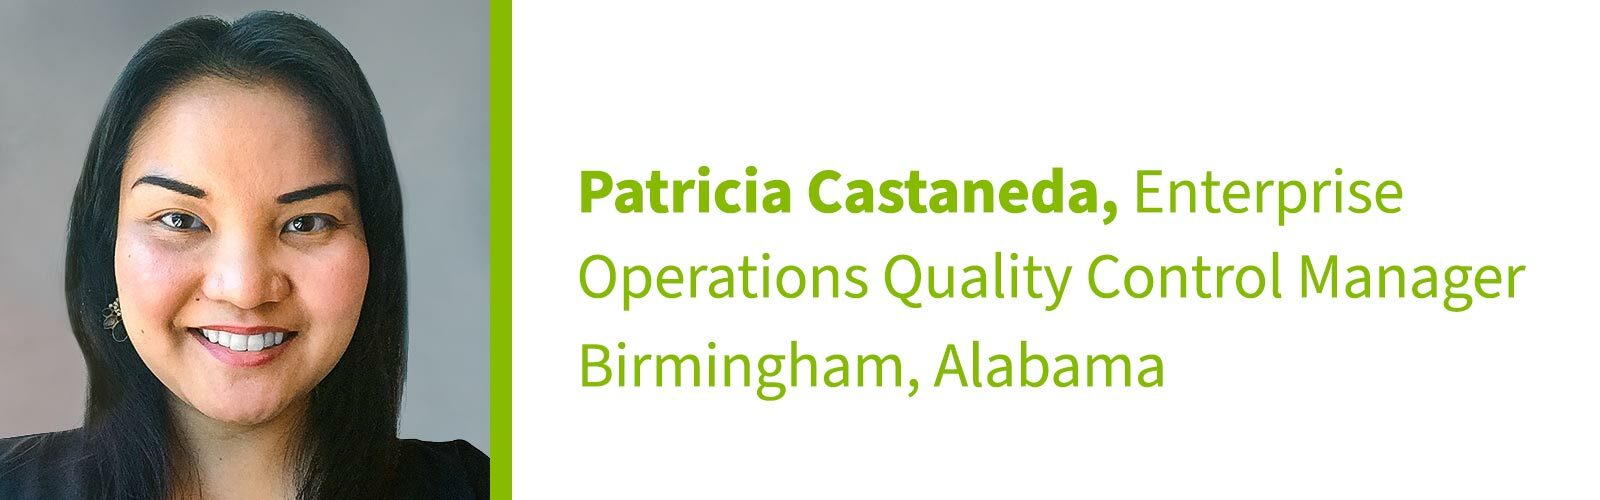 Patricia Castaneda, Enterprise Operations Quality Control Manager, Birmingham, Alabama 